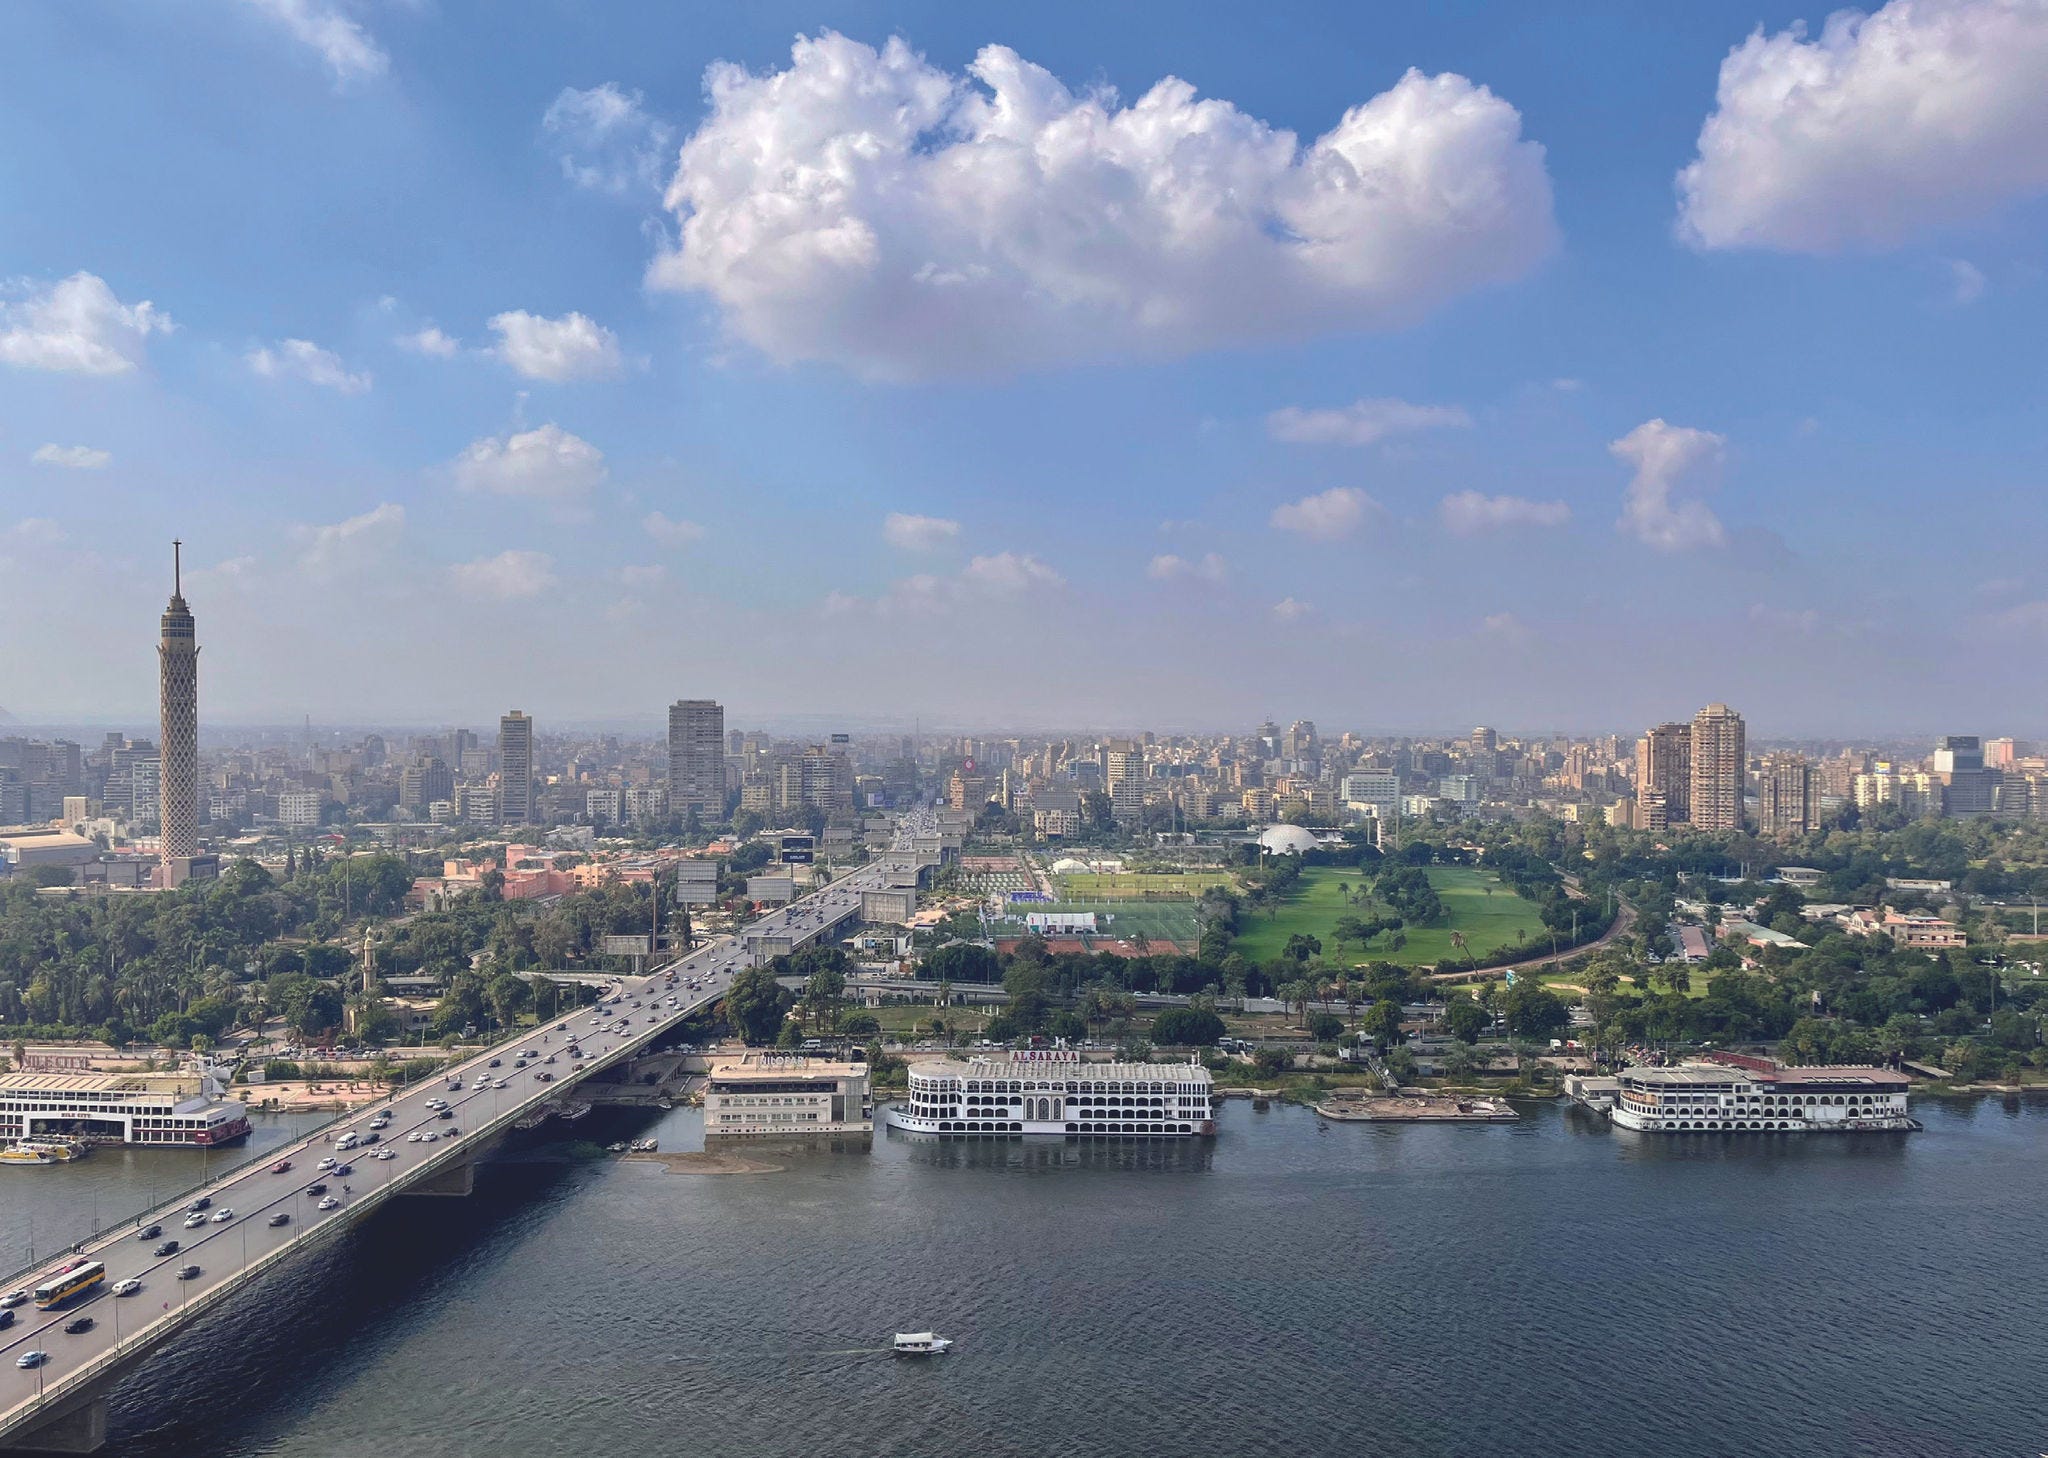 A bridge across Cairo